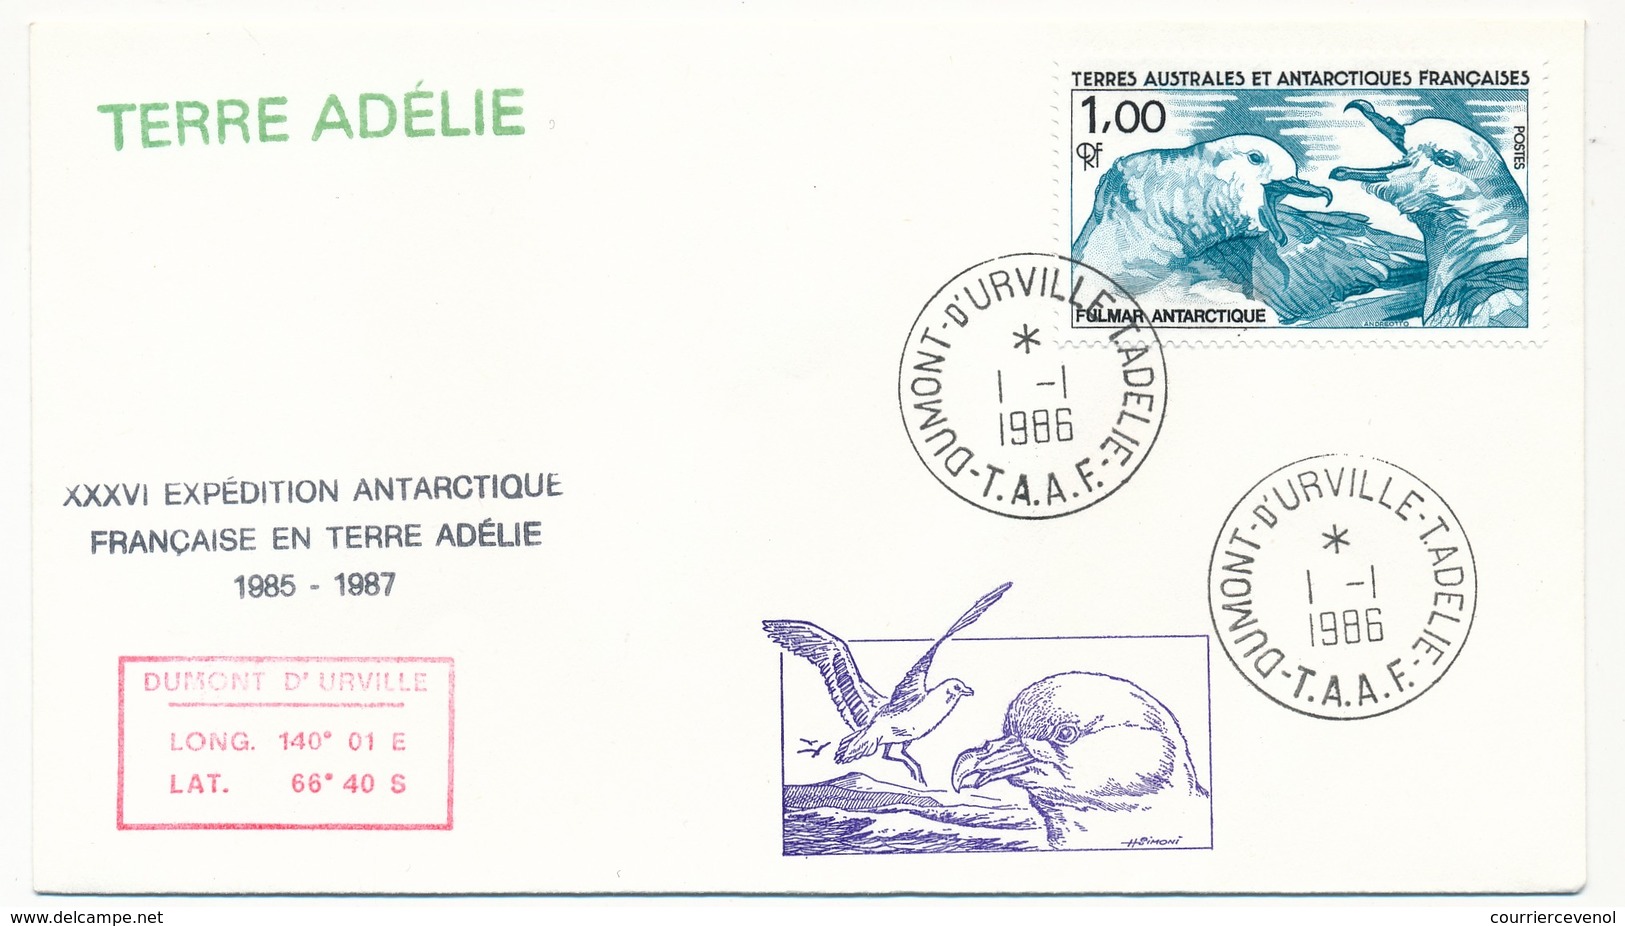 TAAF - Enveloppe - Dumont D'Urville T. Adélie - 1-1-1986 - XXXVI Expédition Antarctique Française... - Covers & Documents